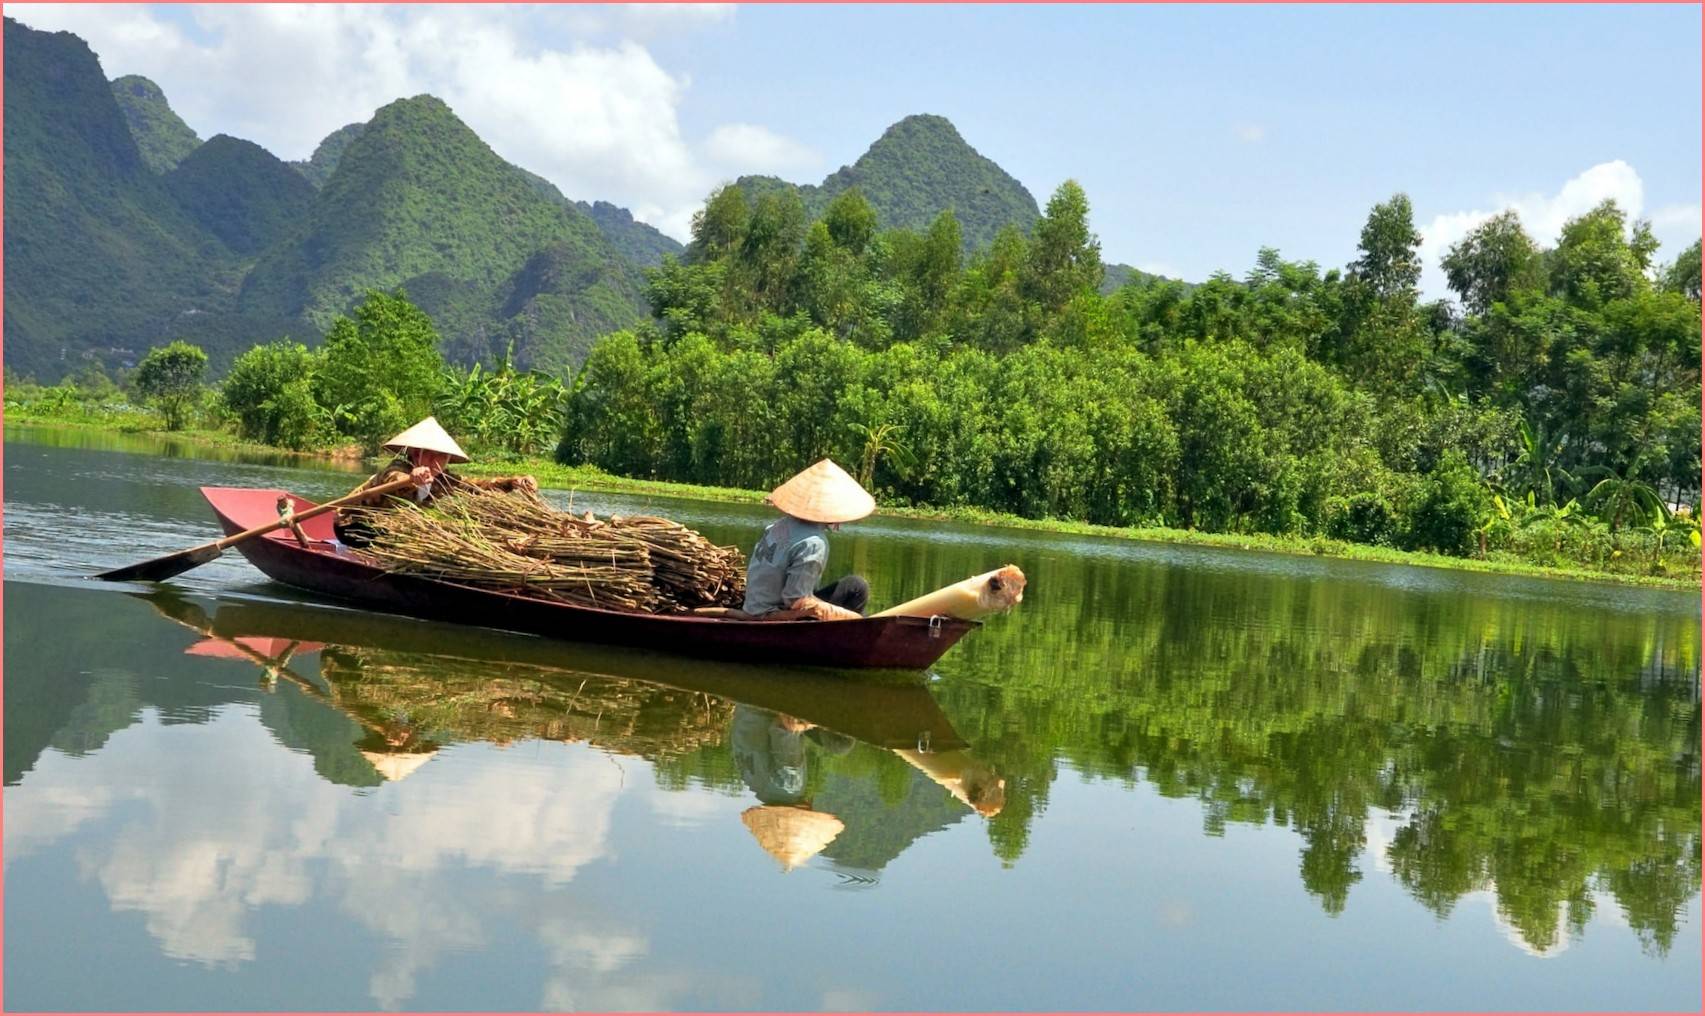 Климат и сезоны для посещения вьетнама